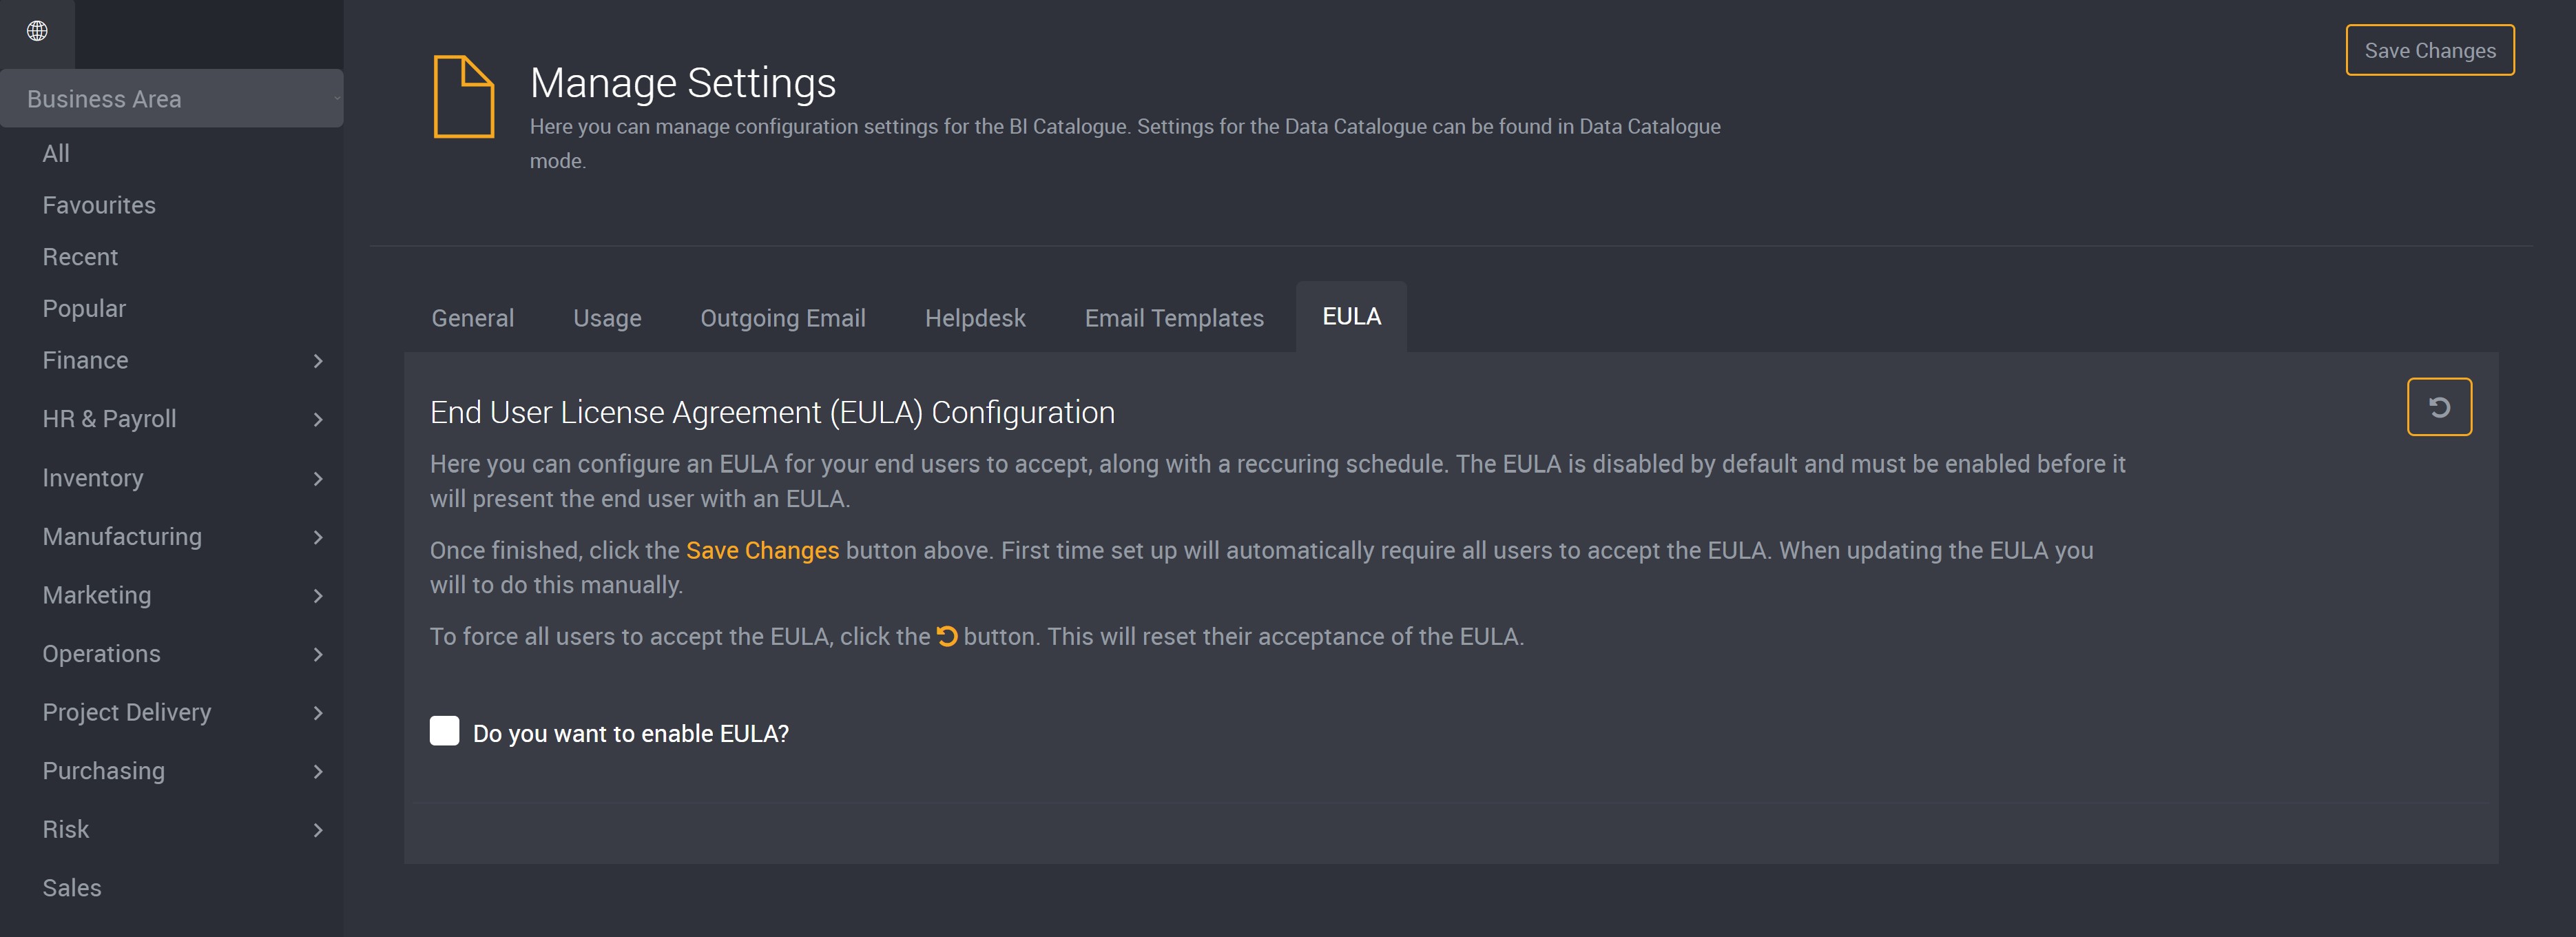 EULA Settings Page